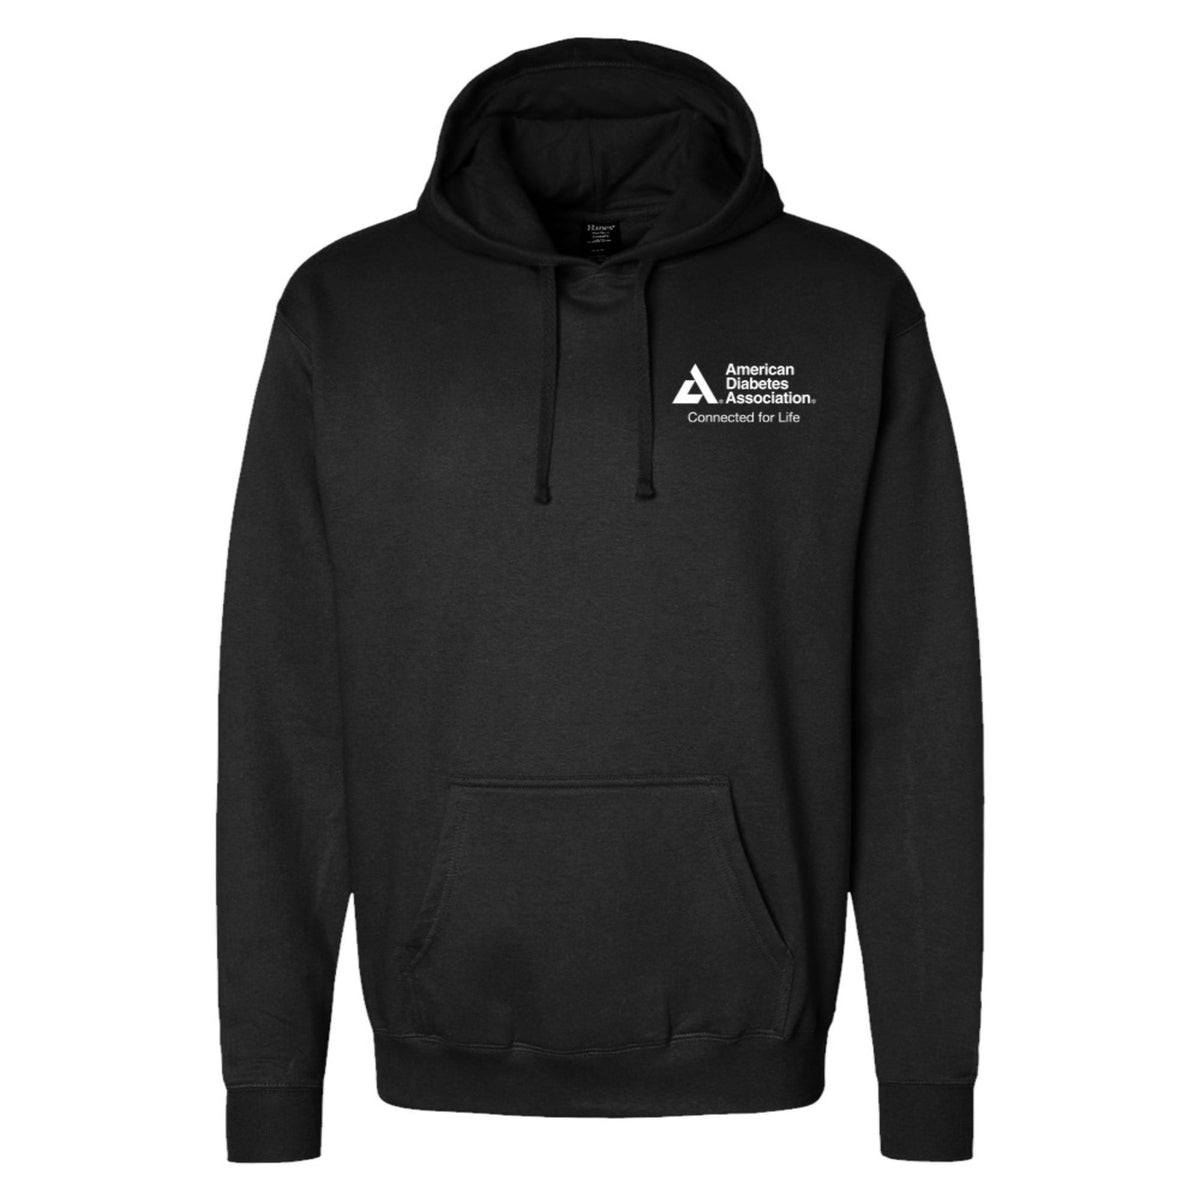 american-diabetes-association-pullover-hoodie-black-shopdiabetes